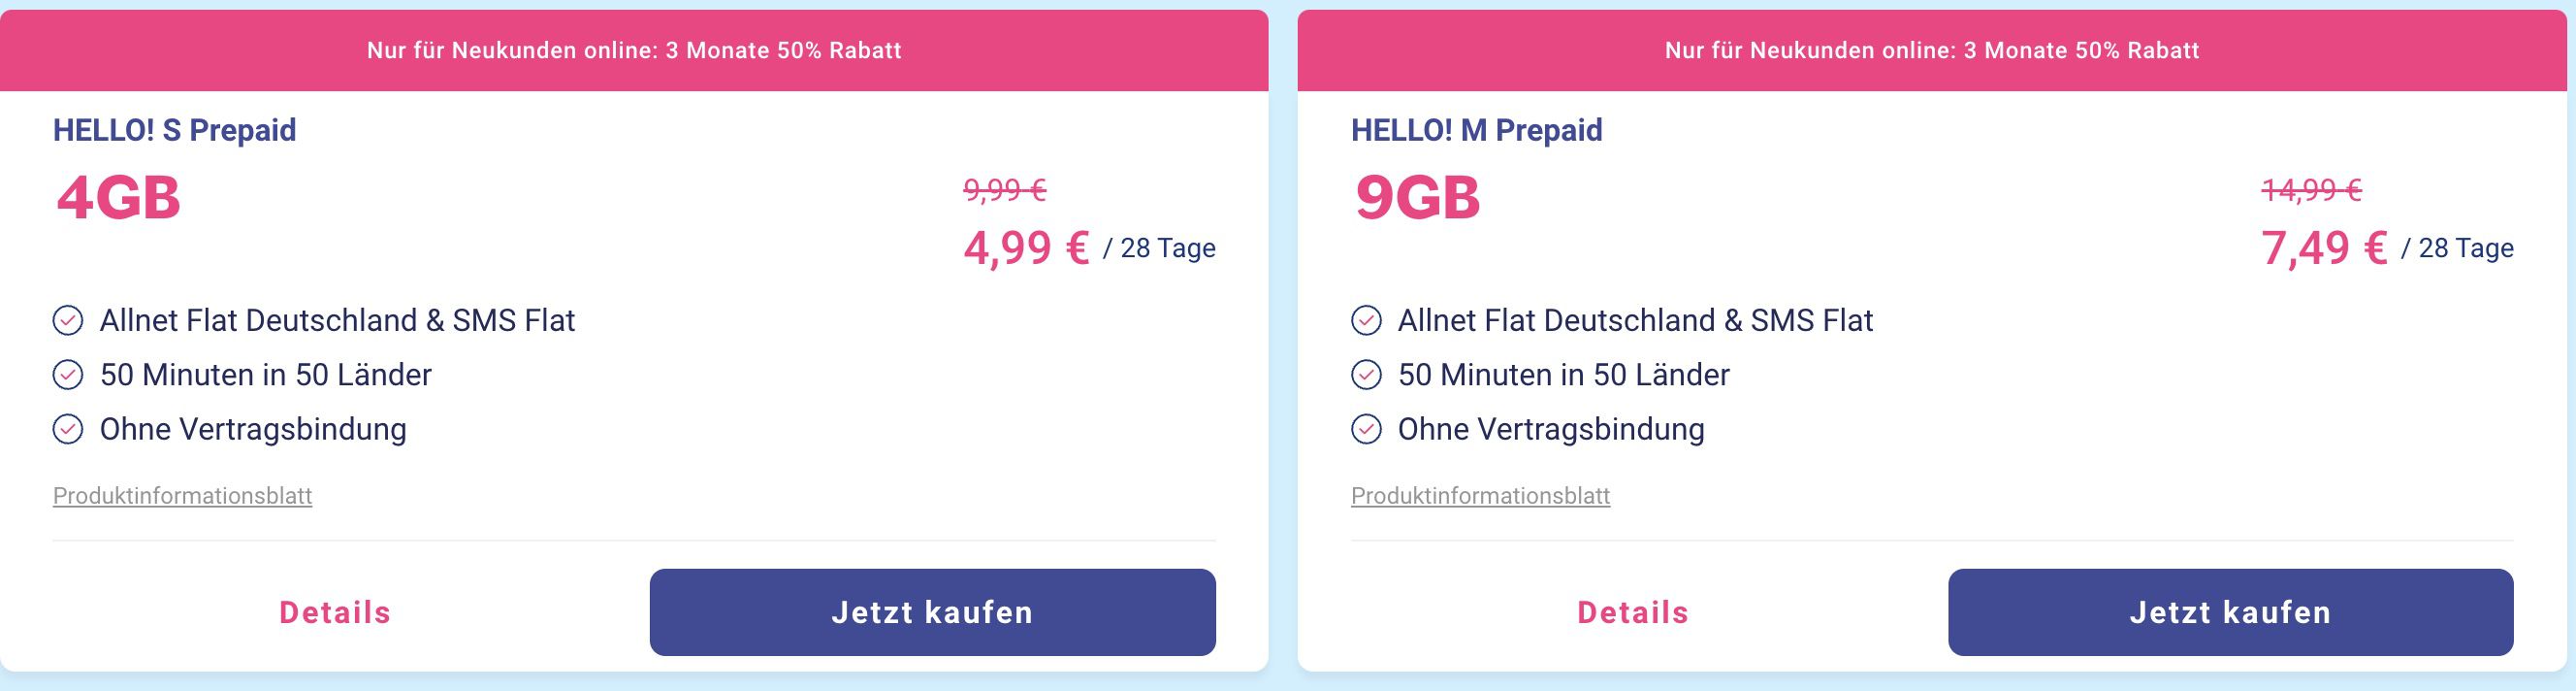 Netz z.B. o2 Prepaid-Tarife 50% 9GB mit 7,49€ LTE - Lebara Rabatt Allnet-Flat im auf